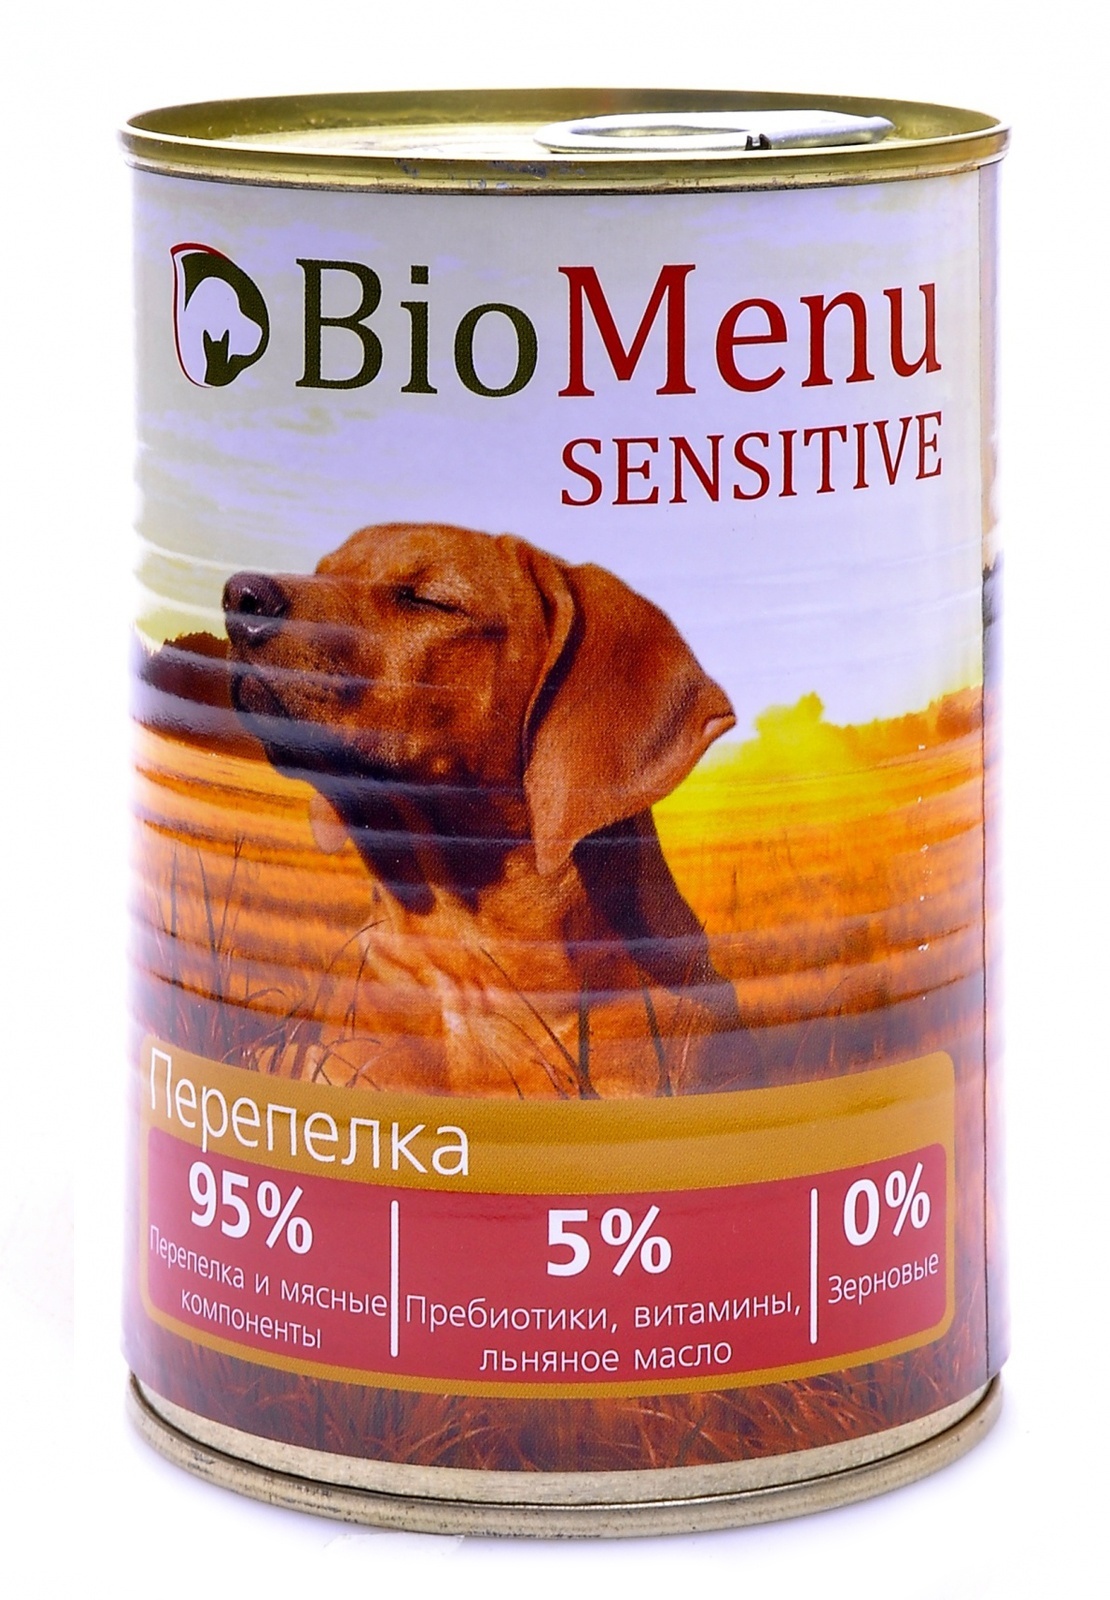 BioMenu BioMenu гипоаллергенные консервы для собак перепелка (100 г) biomenu biomenu паштет для котят мясное ассорти 100 г